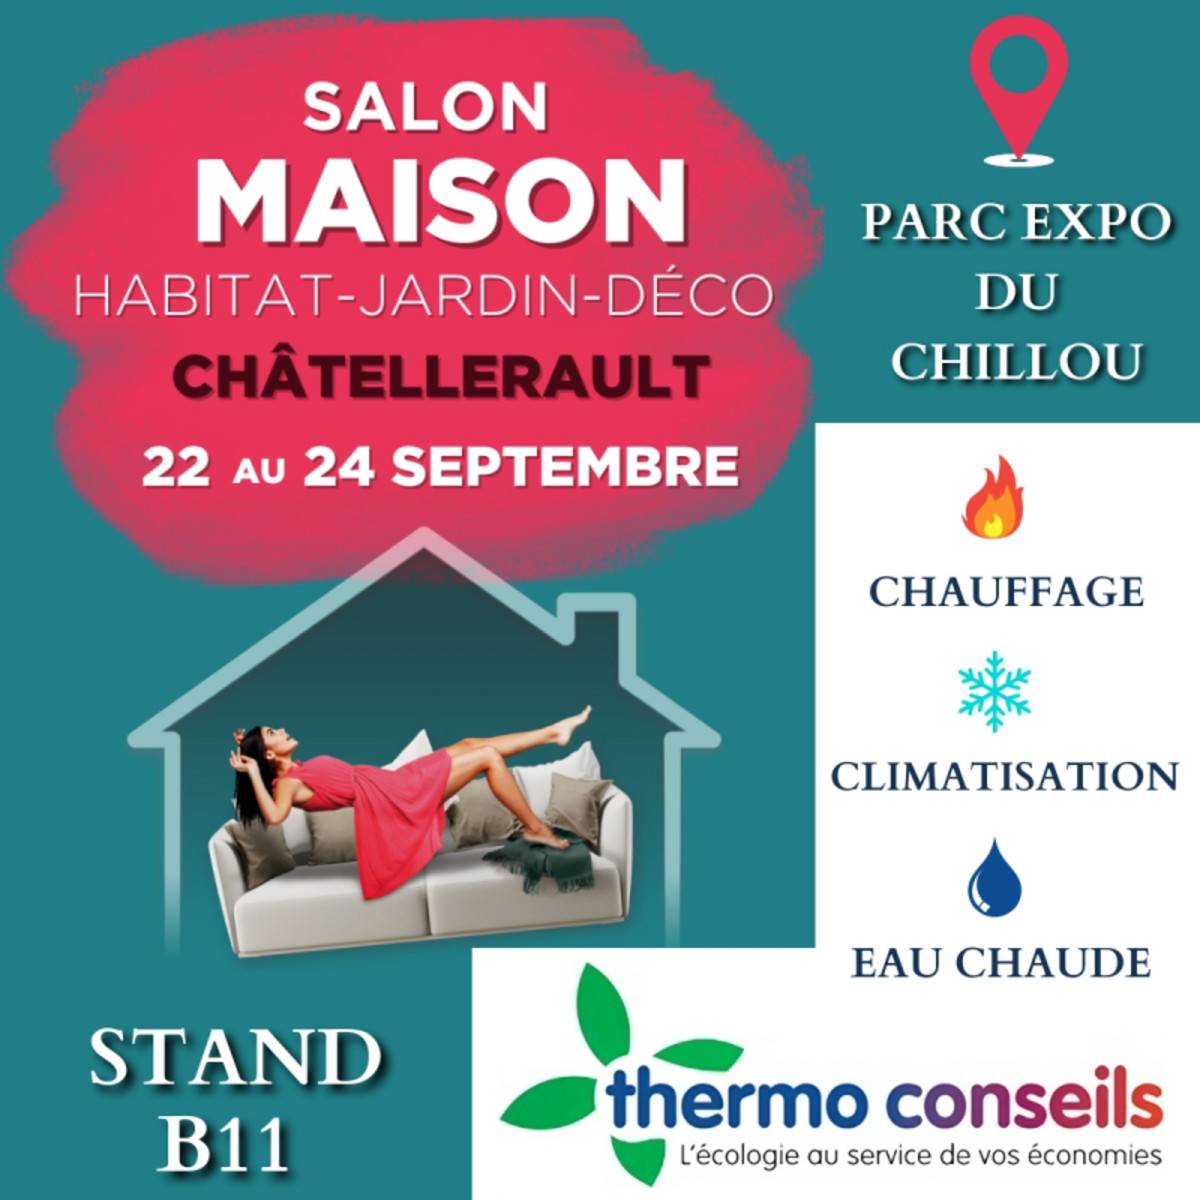 Thermo Conseils salon maison parc expo du chillou à Châtellerault stand b11 du 22 au 24 septembre .jpg